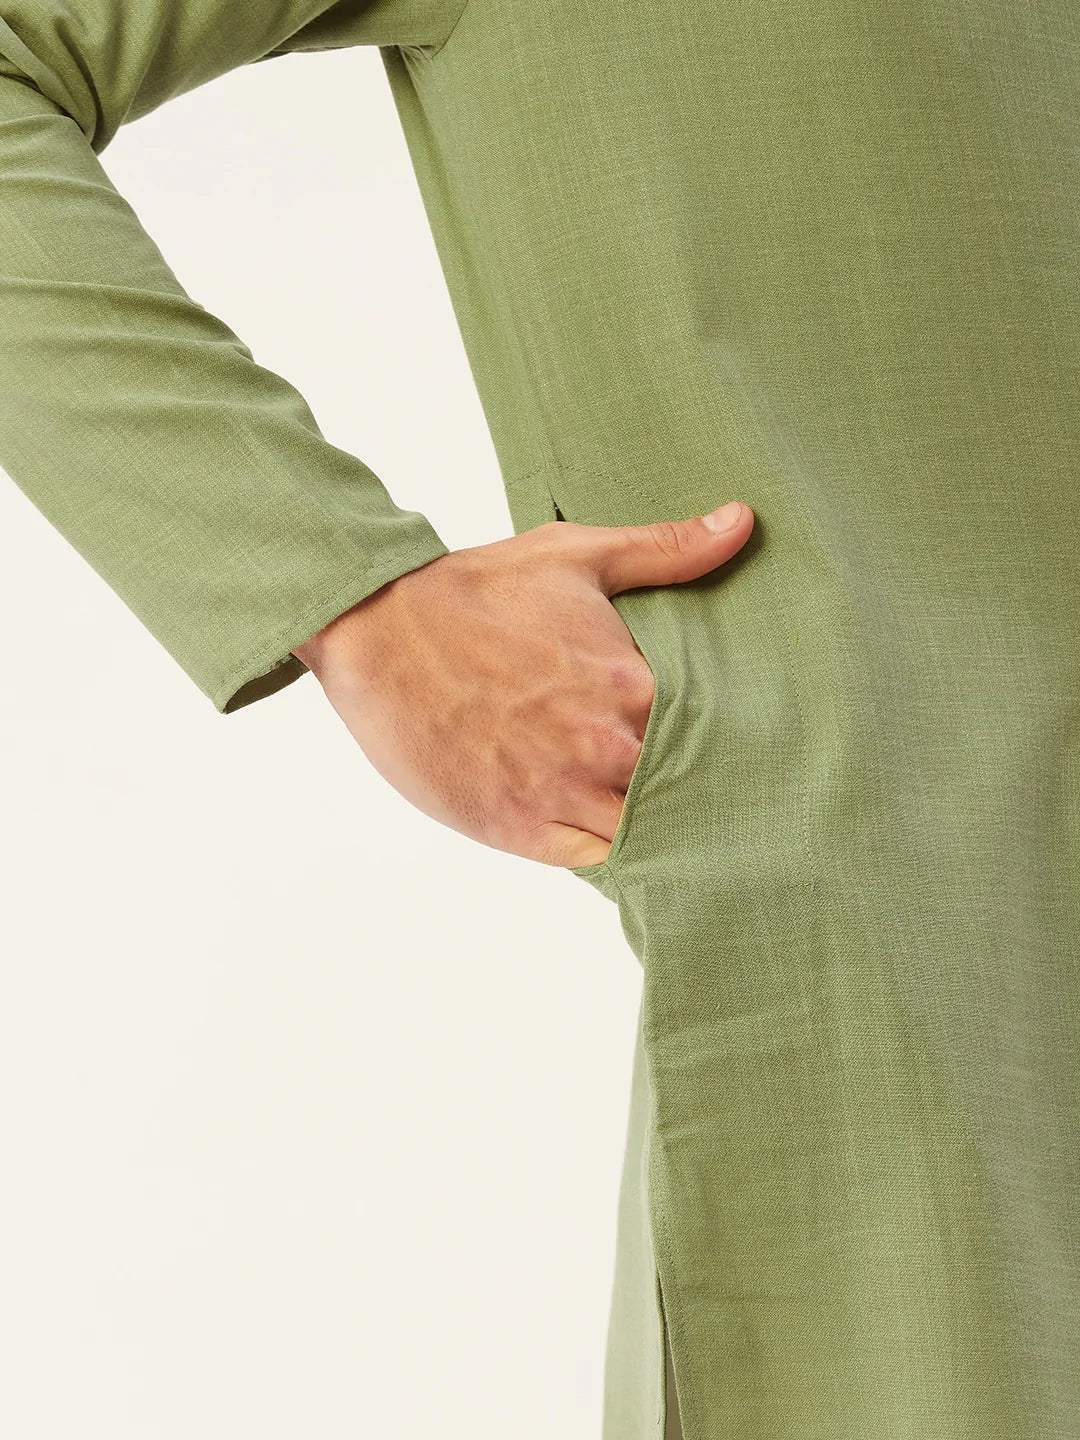 Jompers Men's Pista Cotton Solid Kurta Pyjama ( JOKP 532 Pista )